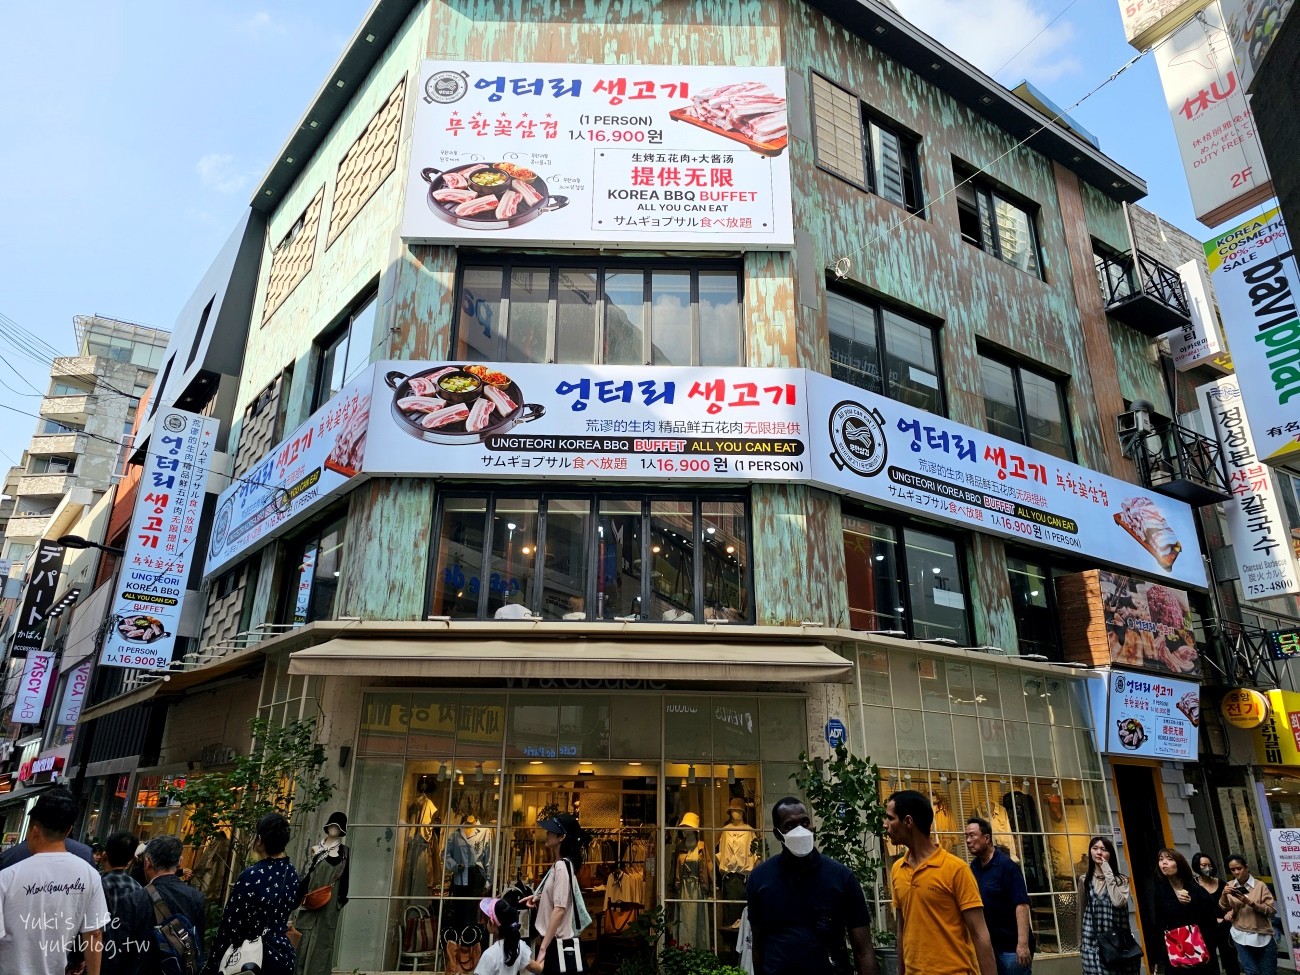 【韓國首爾】明洞逛街必吃美食、必買攻略、明洞烤肉和餐廳推薦 - yukiblog.tw